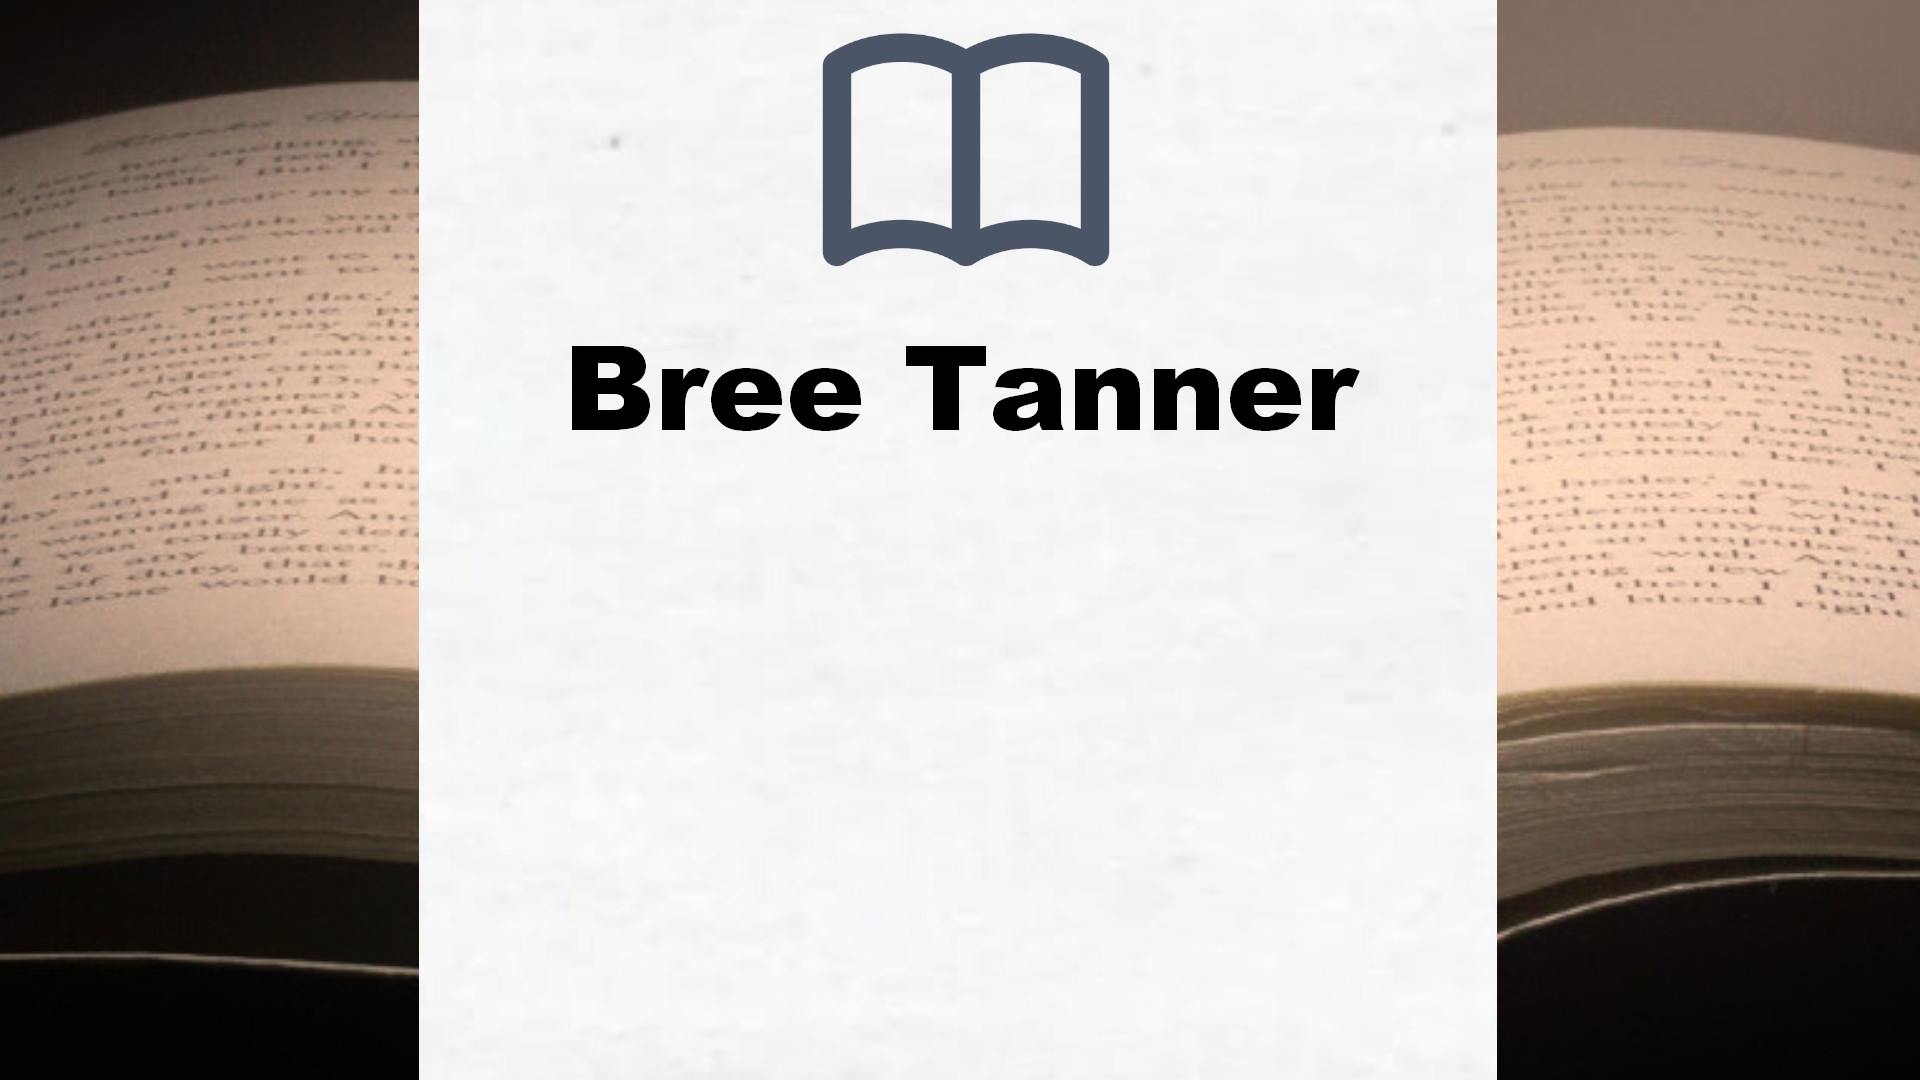 Bücher über Bree Tanner